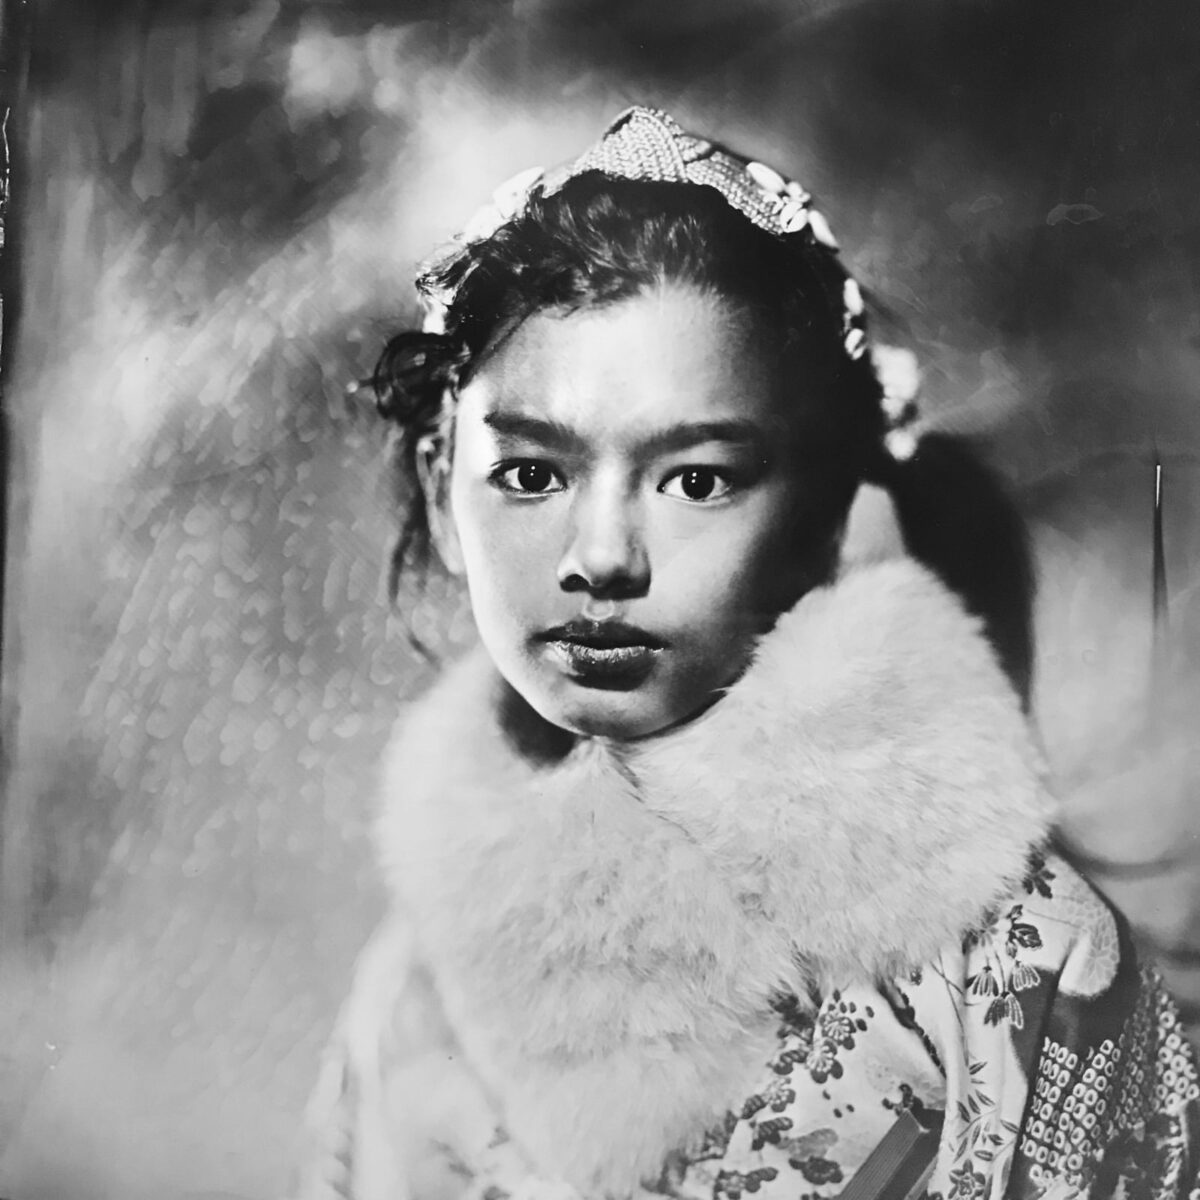 portrait de jeune fille photographiée au collodion humide